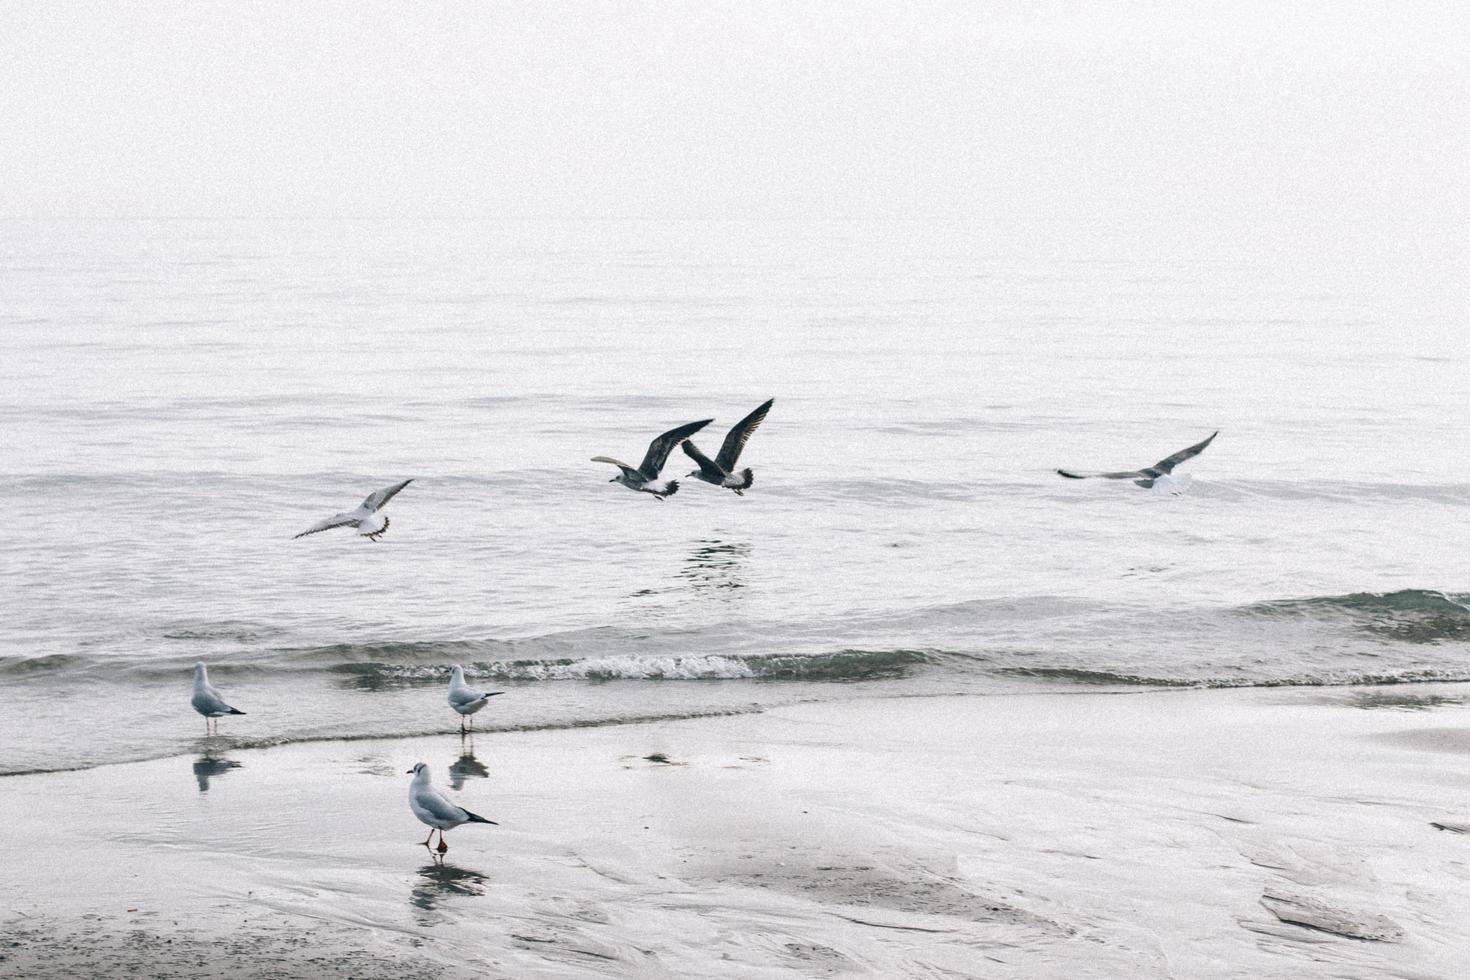 gaivotas voam acima da costa foto